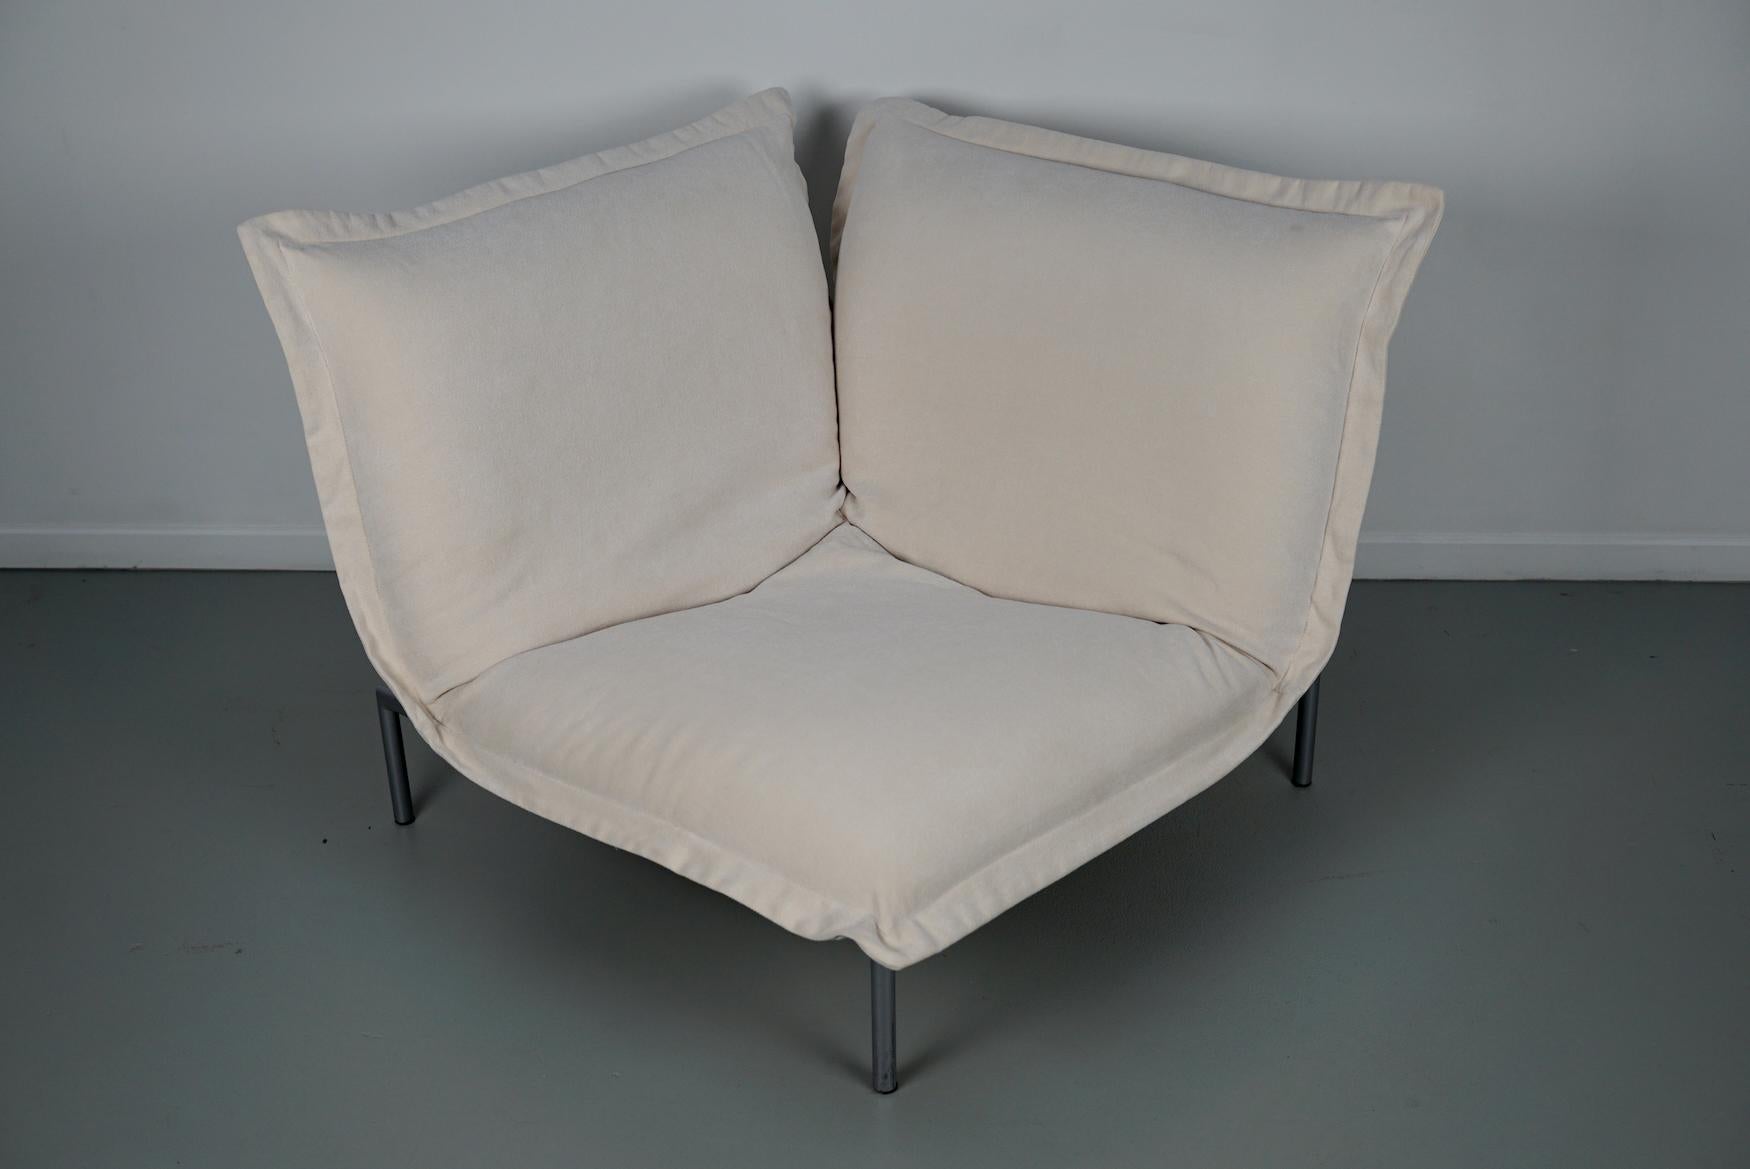 Calin Corner Sofa Set by Pascal Mourgue for Cinna / Ligne Roset - 4 seater 9